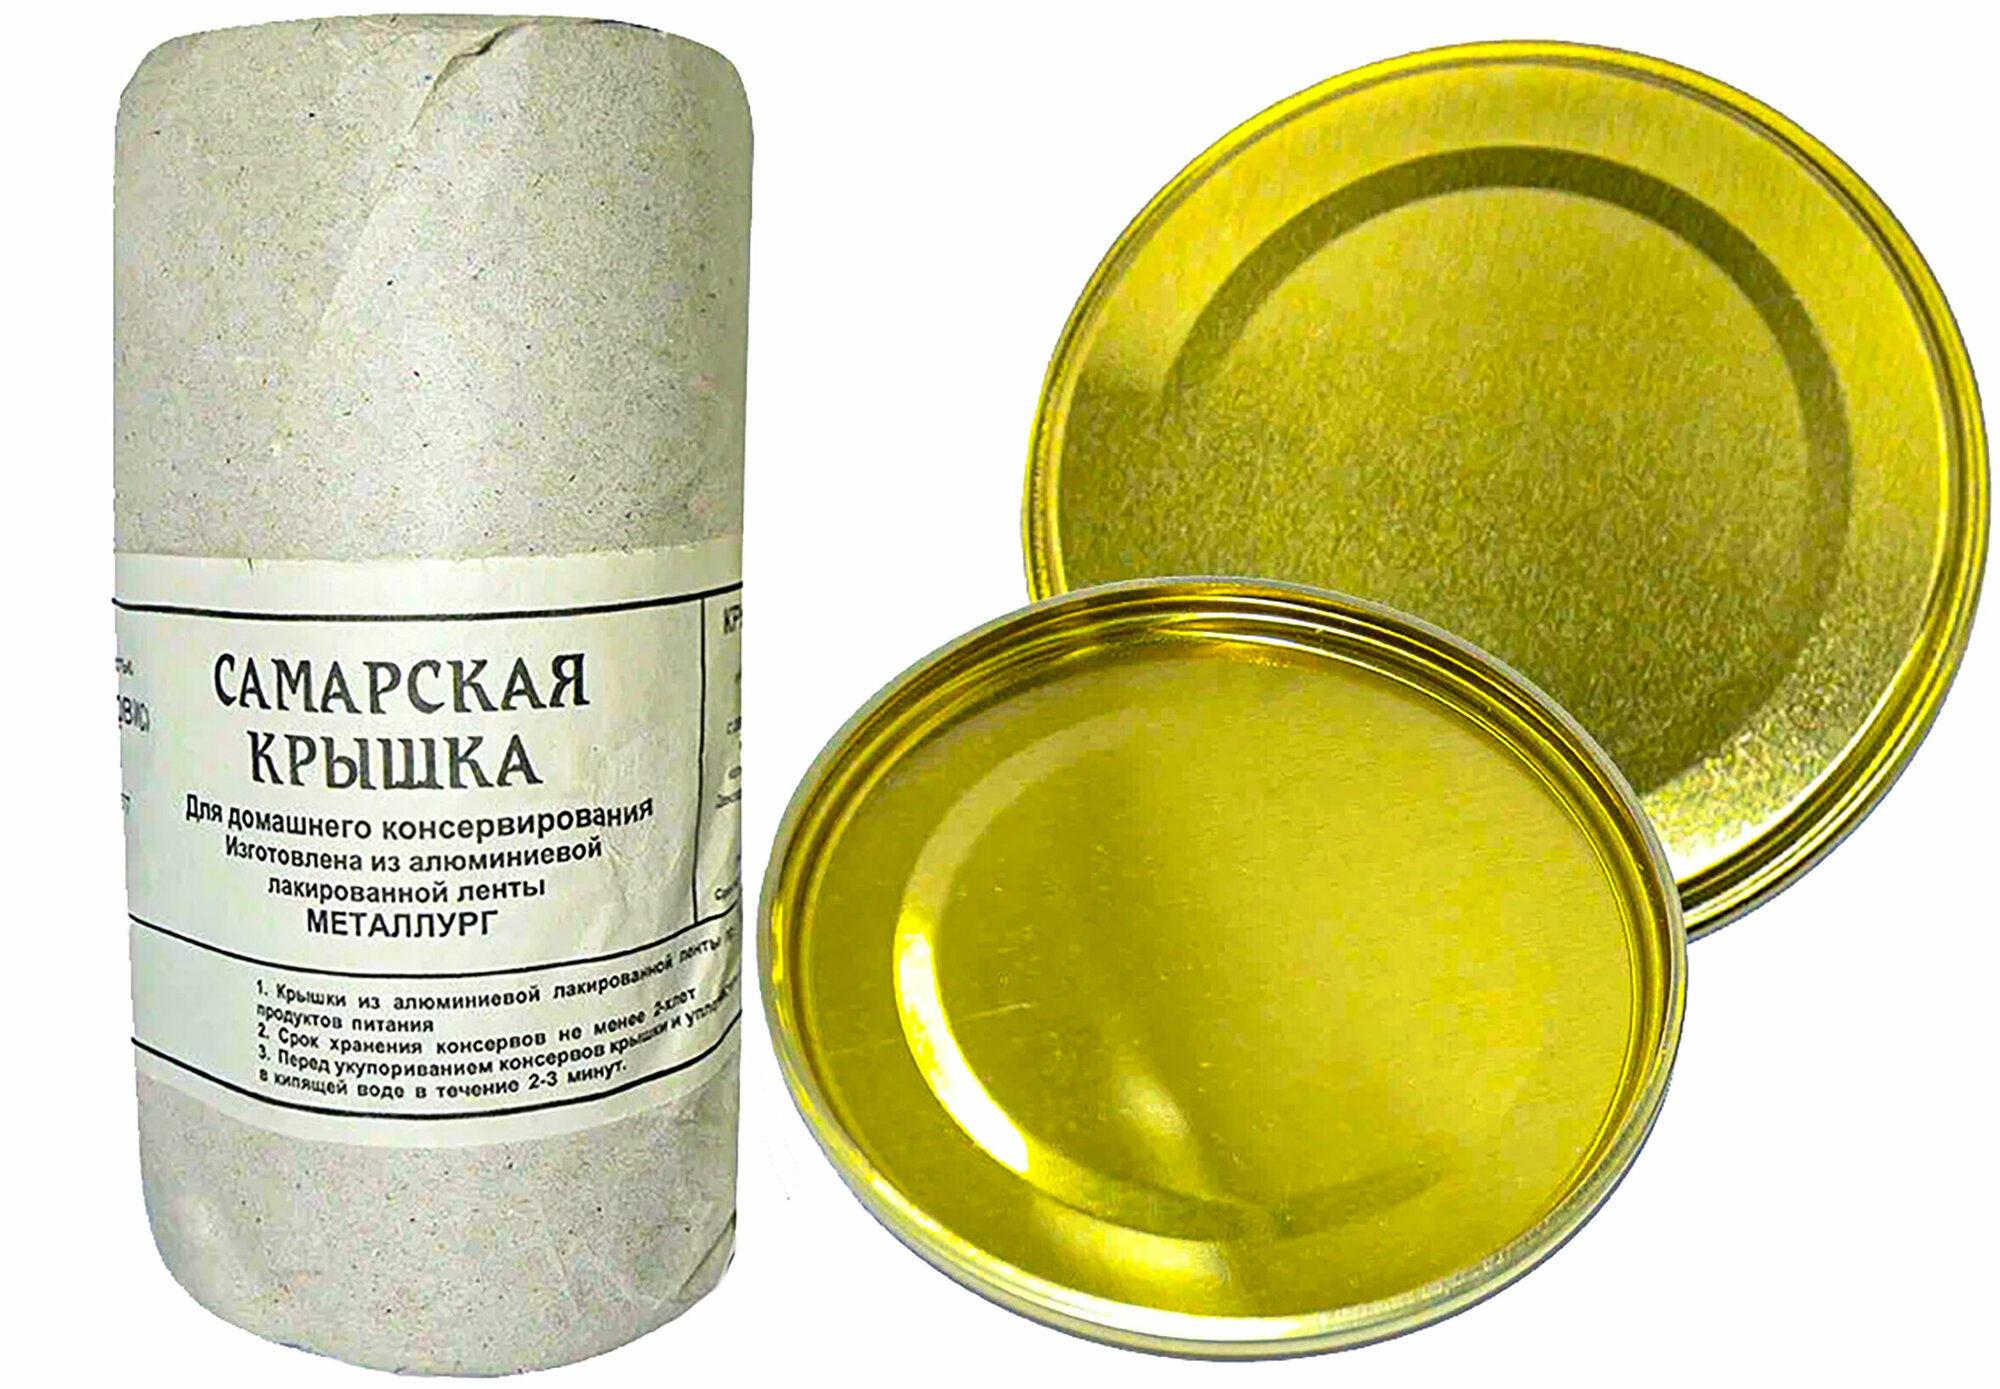 Крышка для консервирования Самарская алюминиевая в бумажной упаковке (50 шт.)